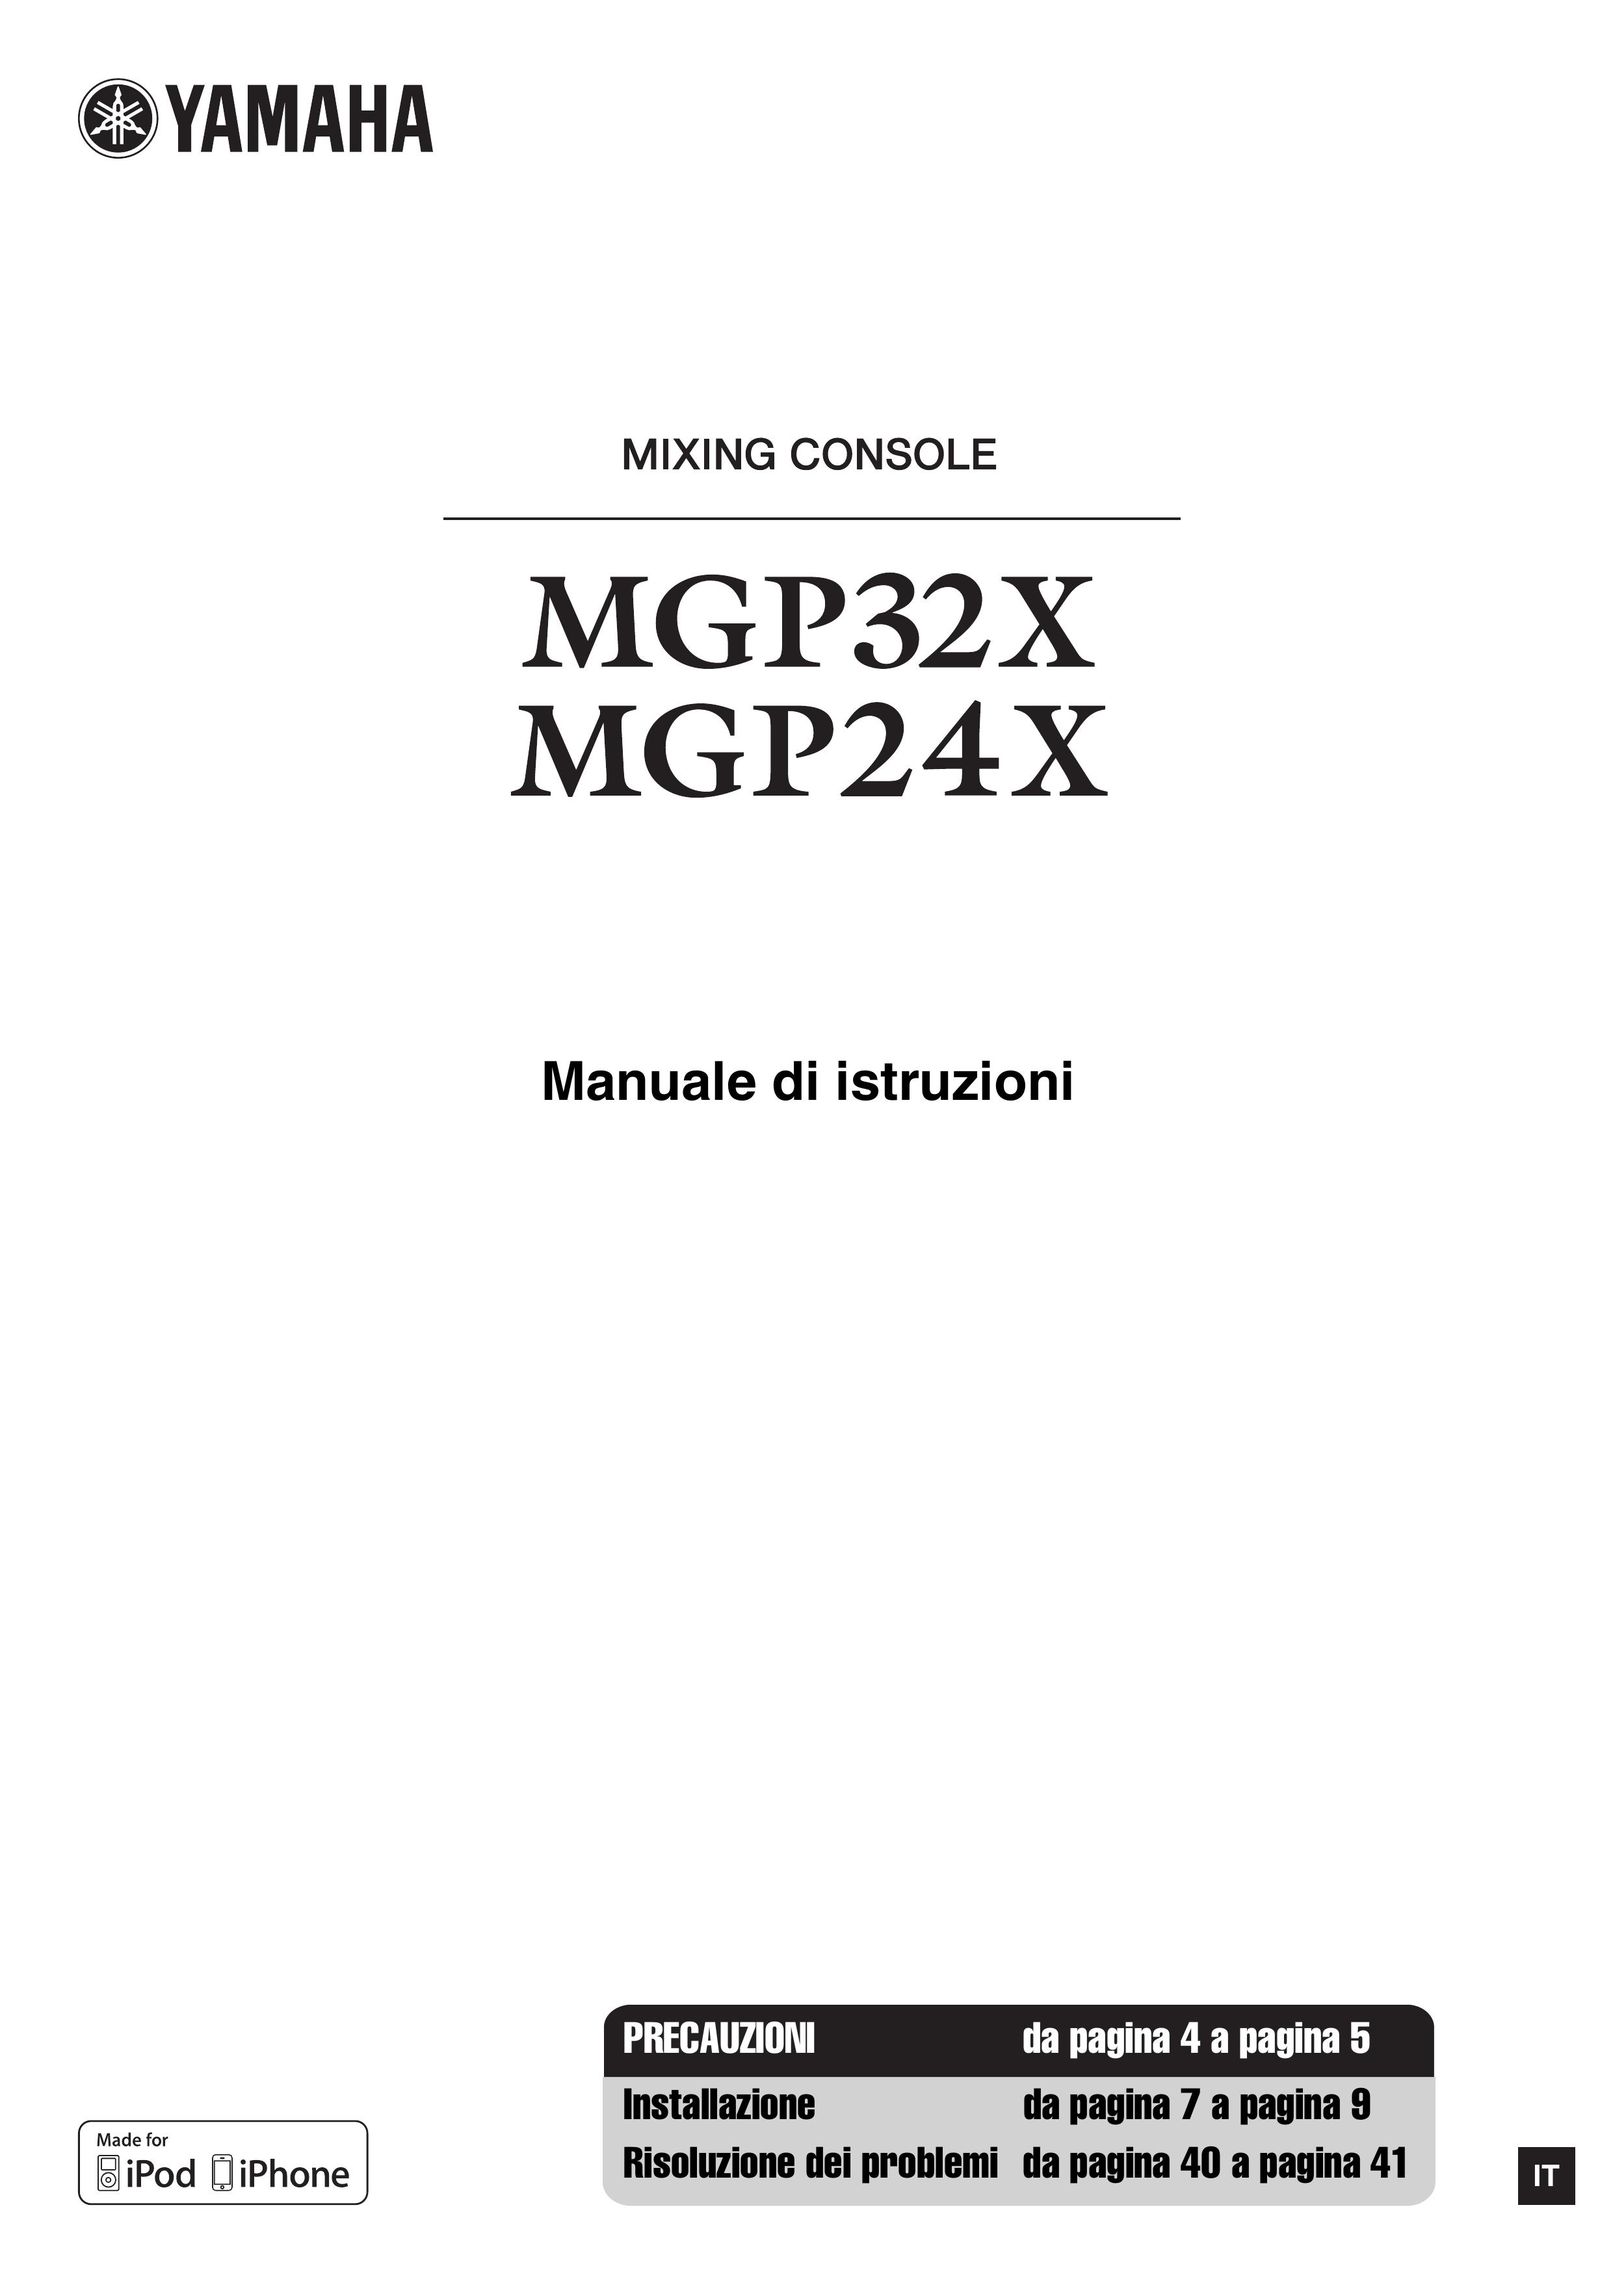 Yamaha MGP-24X Musical Toy Instrument User Manual